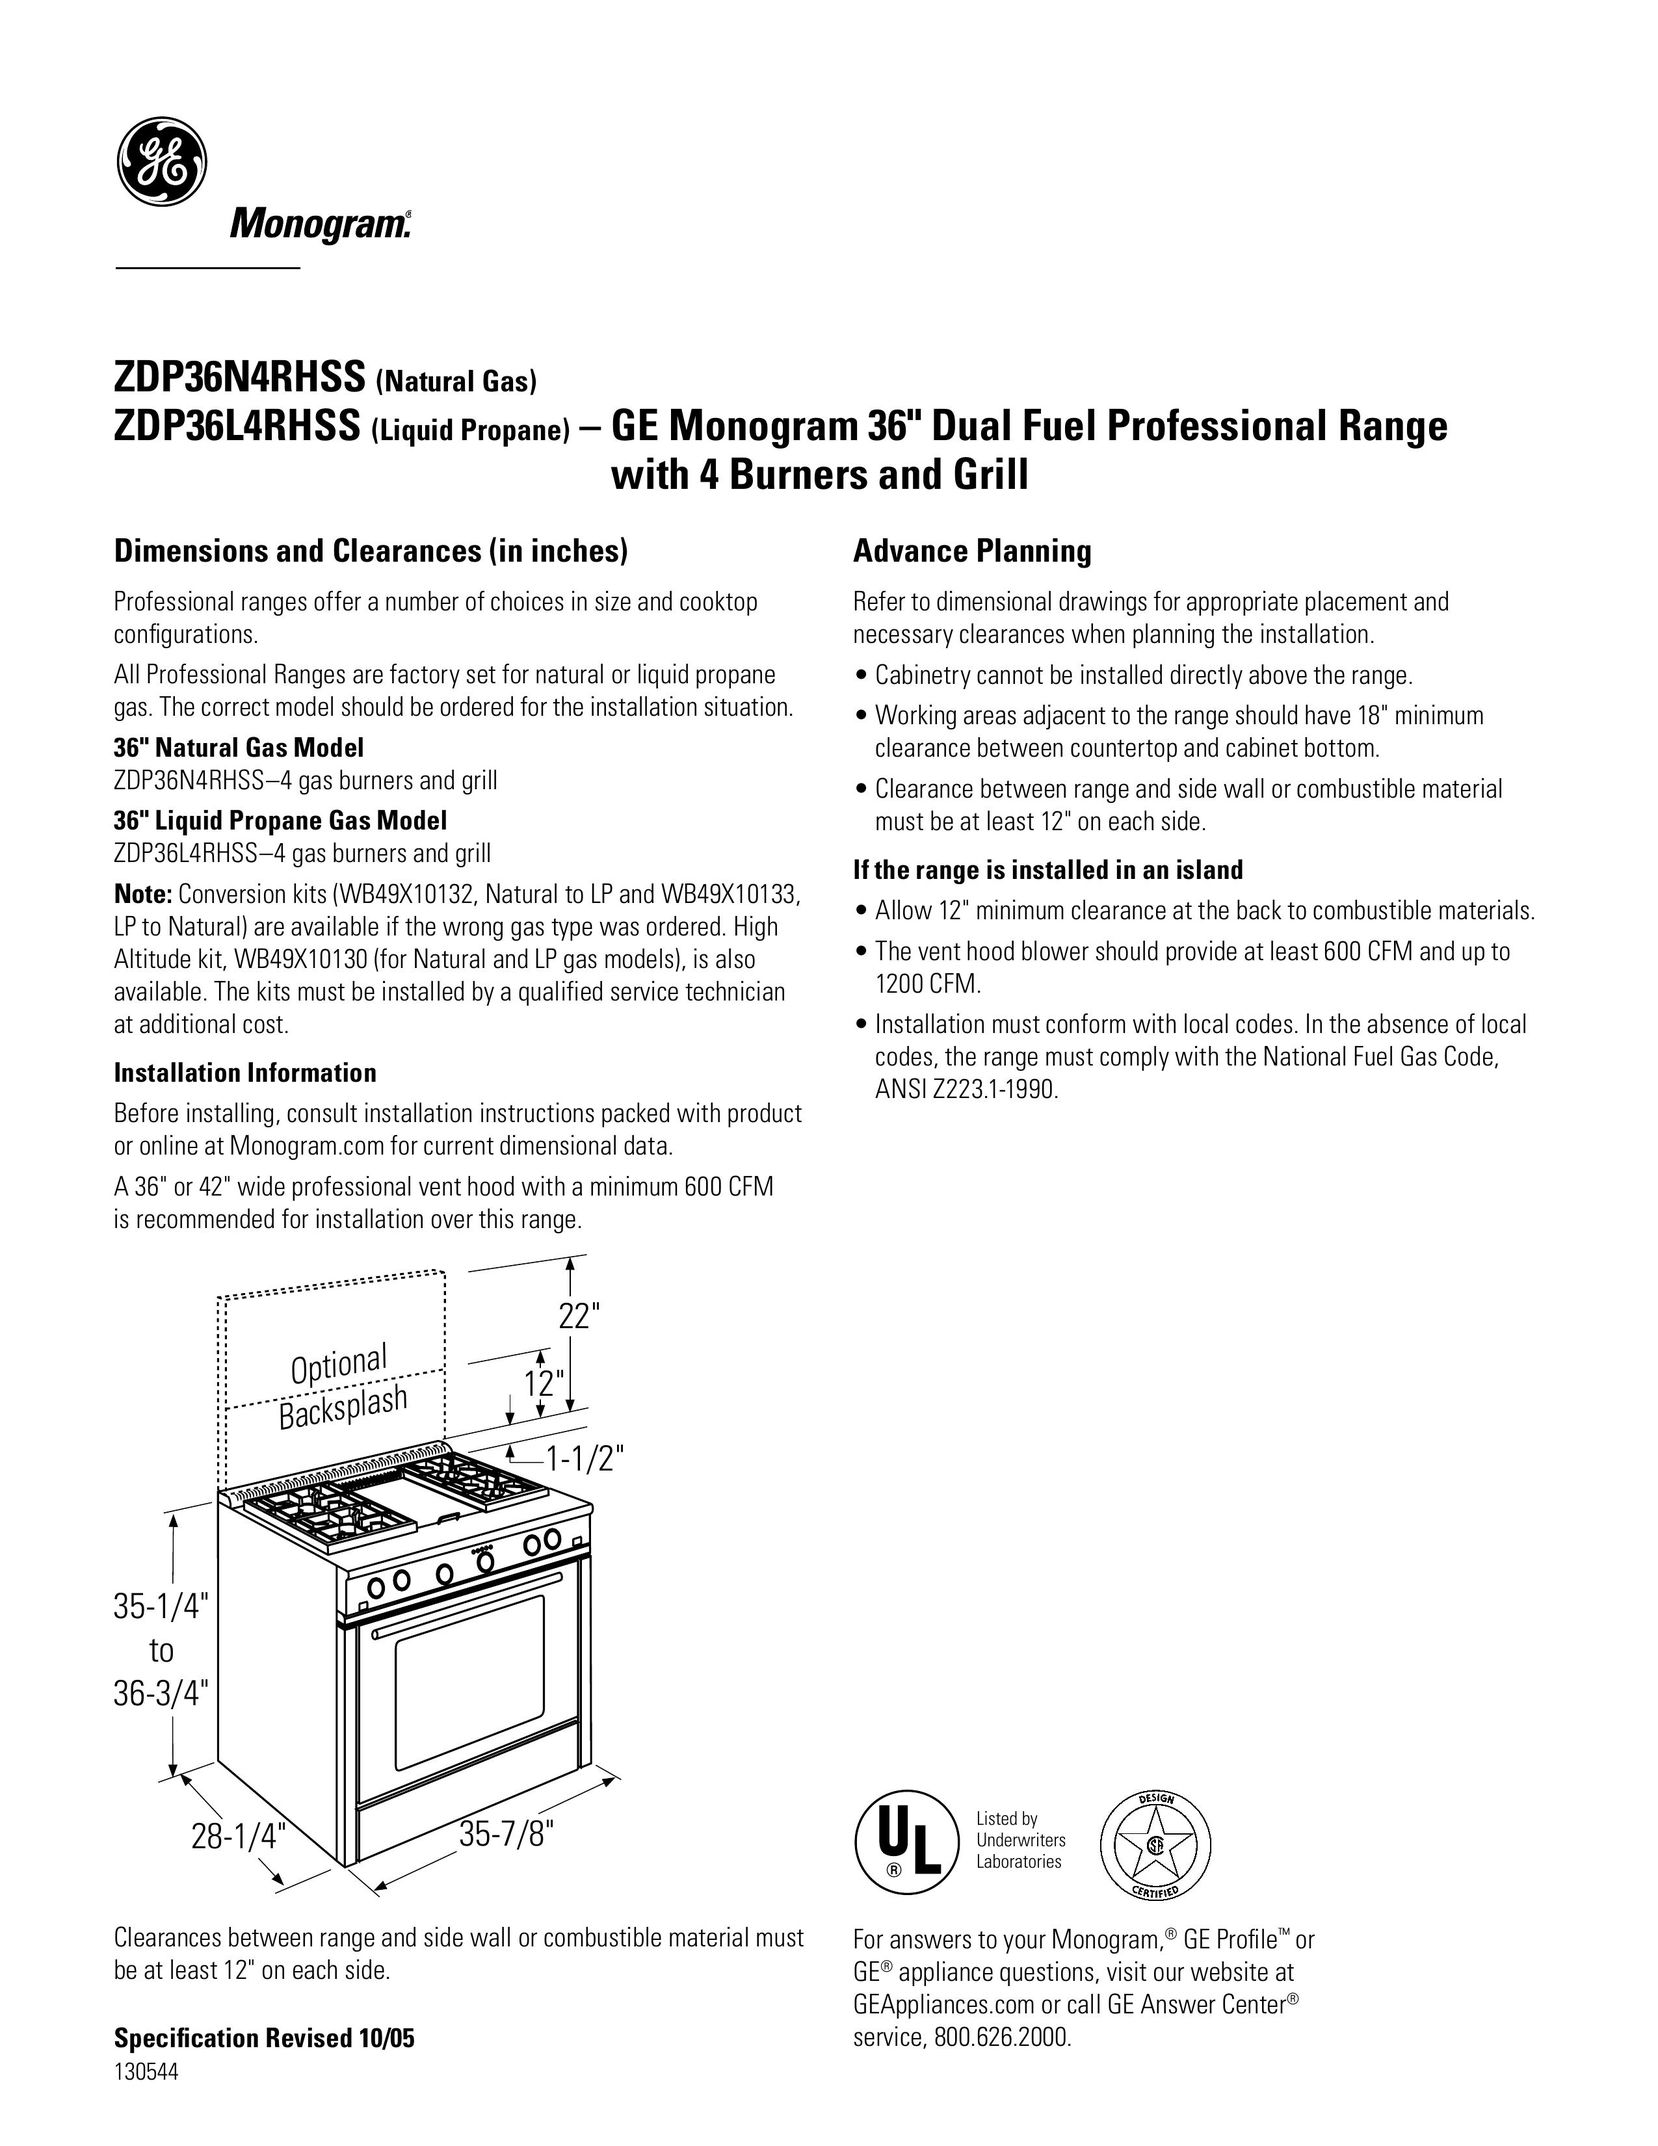 GE ZDP36L4RHSS4 Stove User Manual